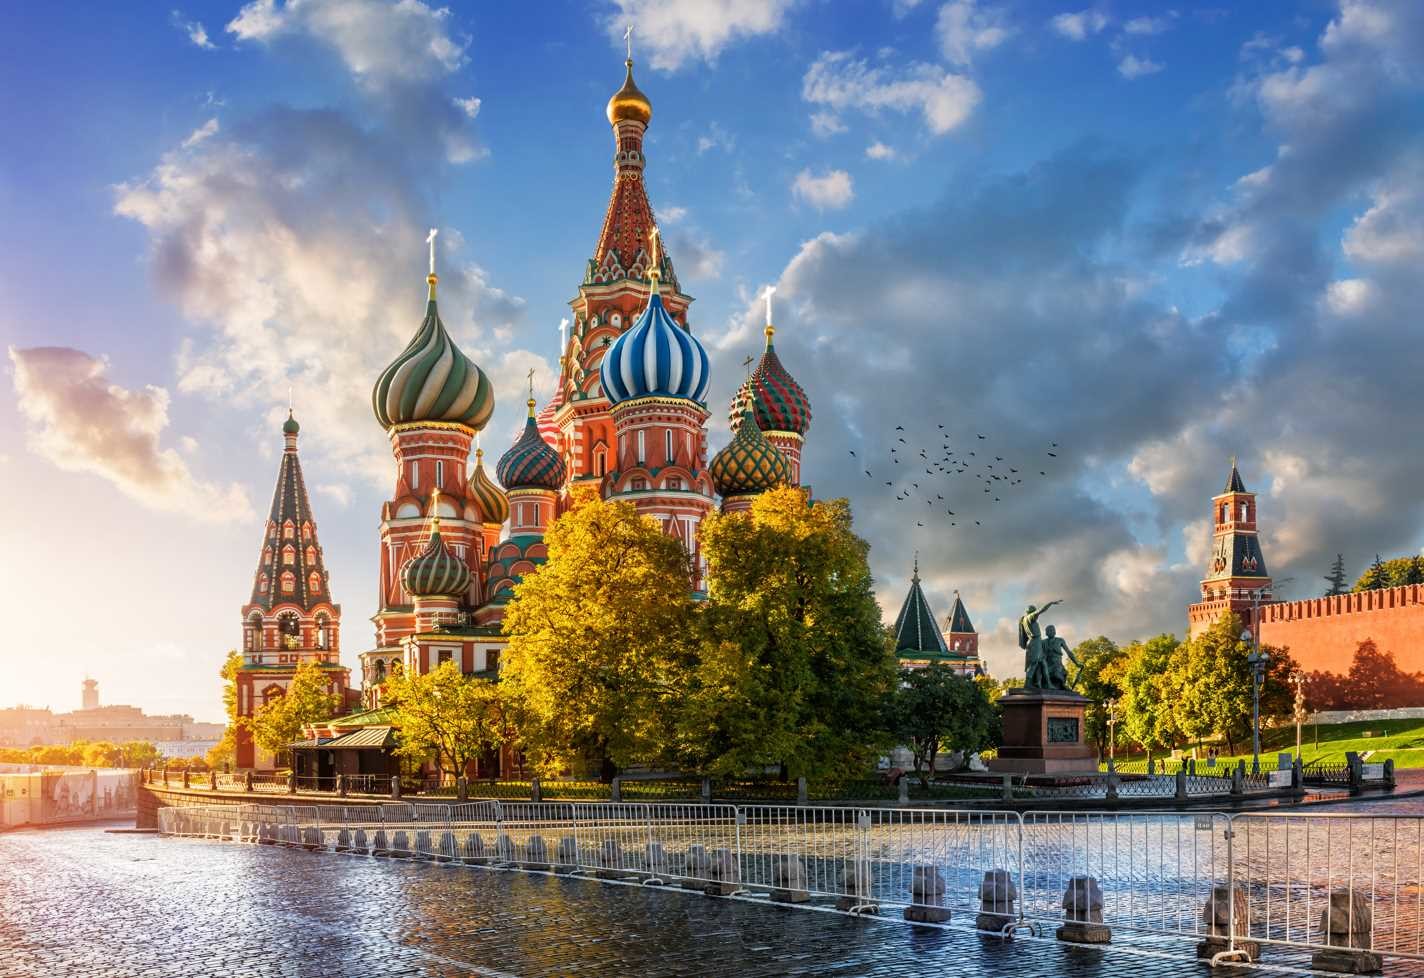 Тест для знатоков России: а Вы знаете в каких городах находятся эти достопримечательности?